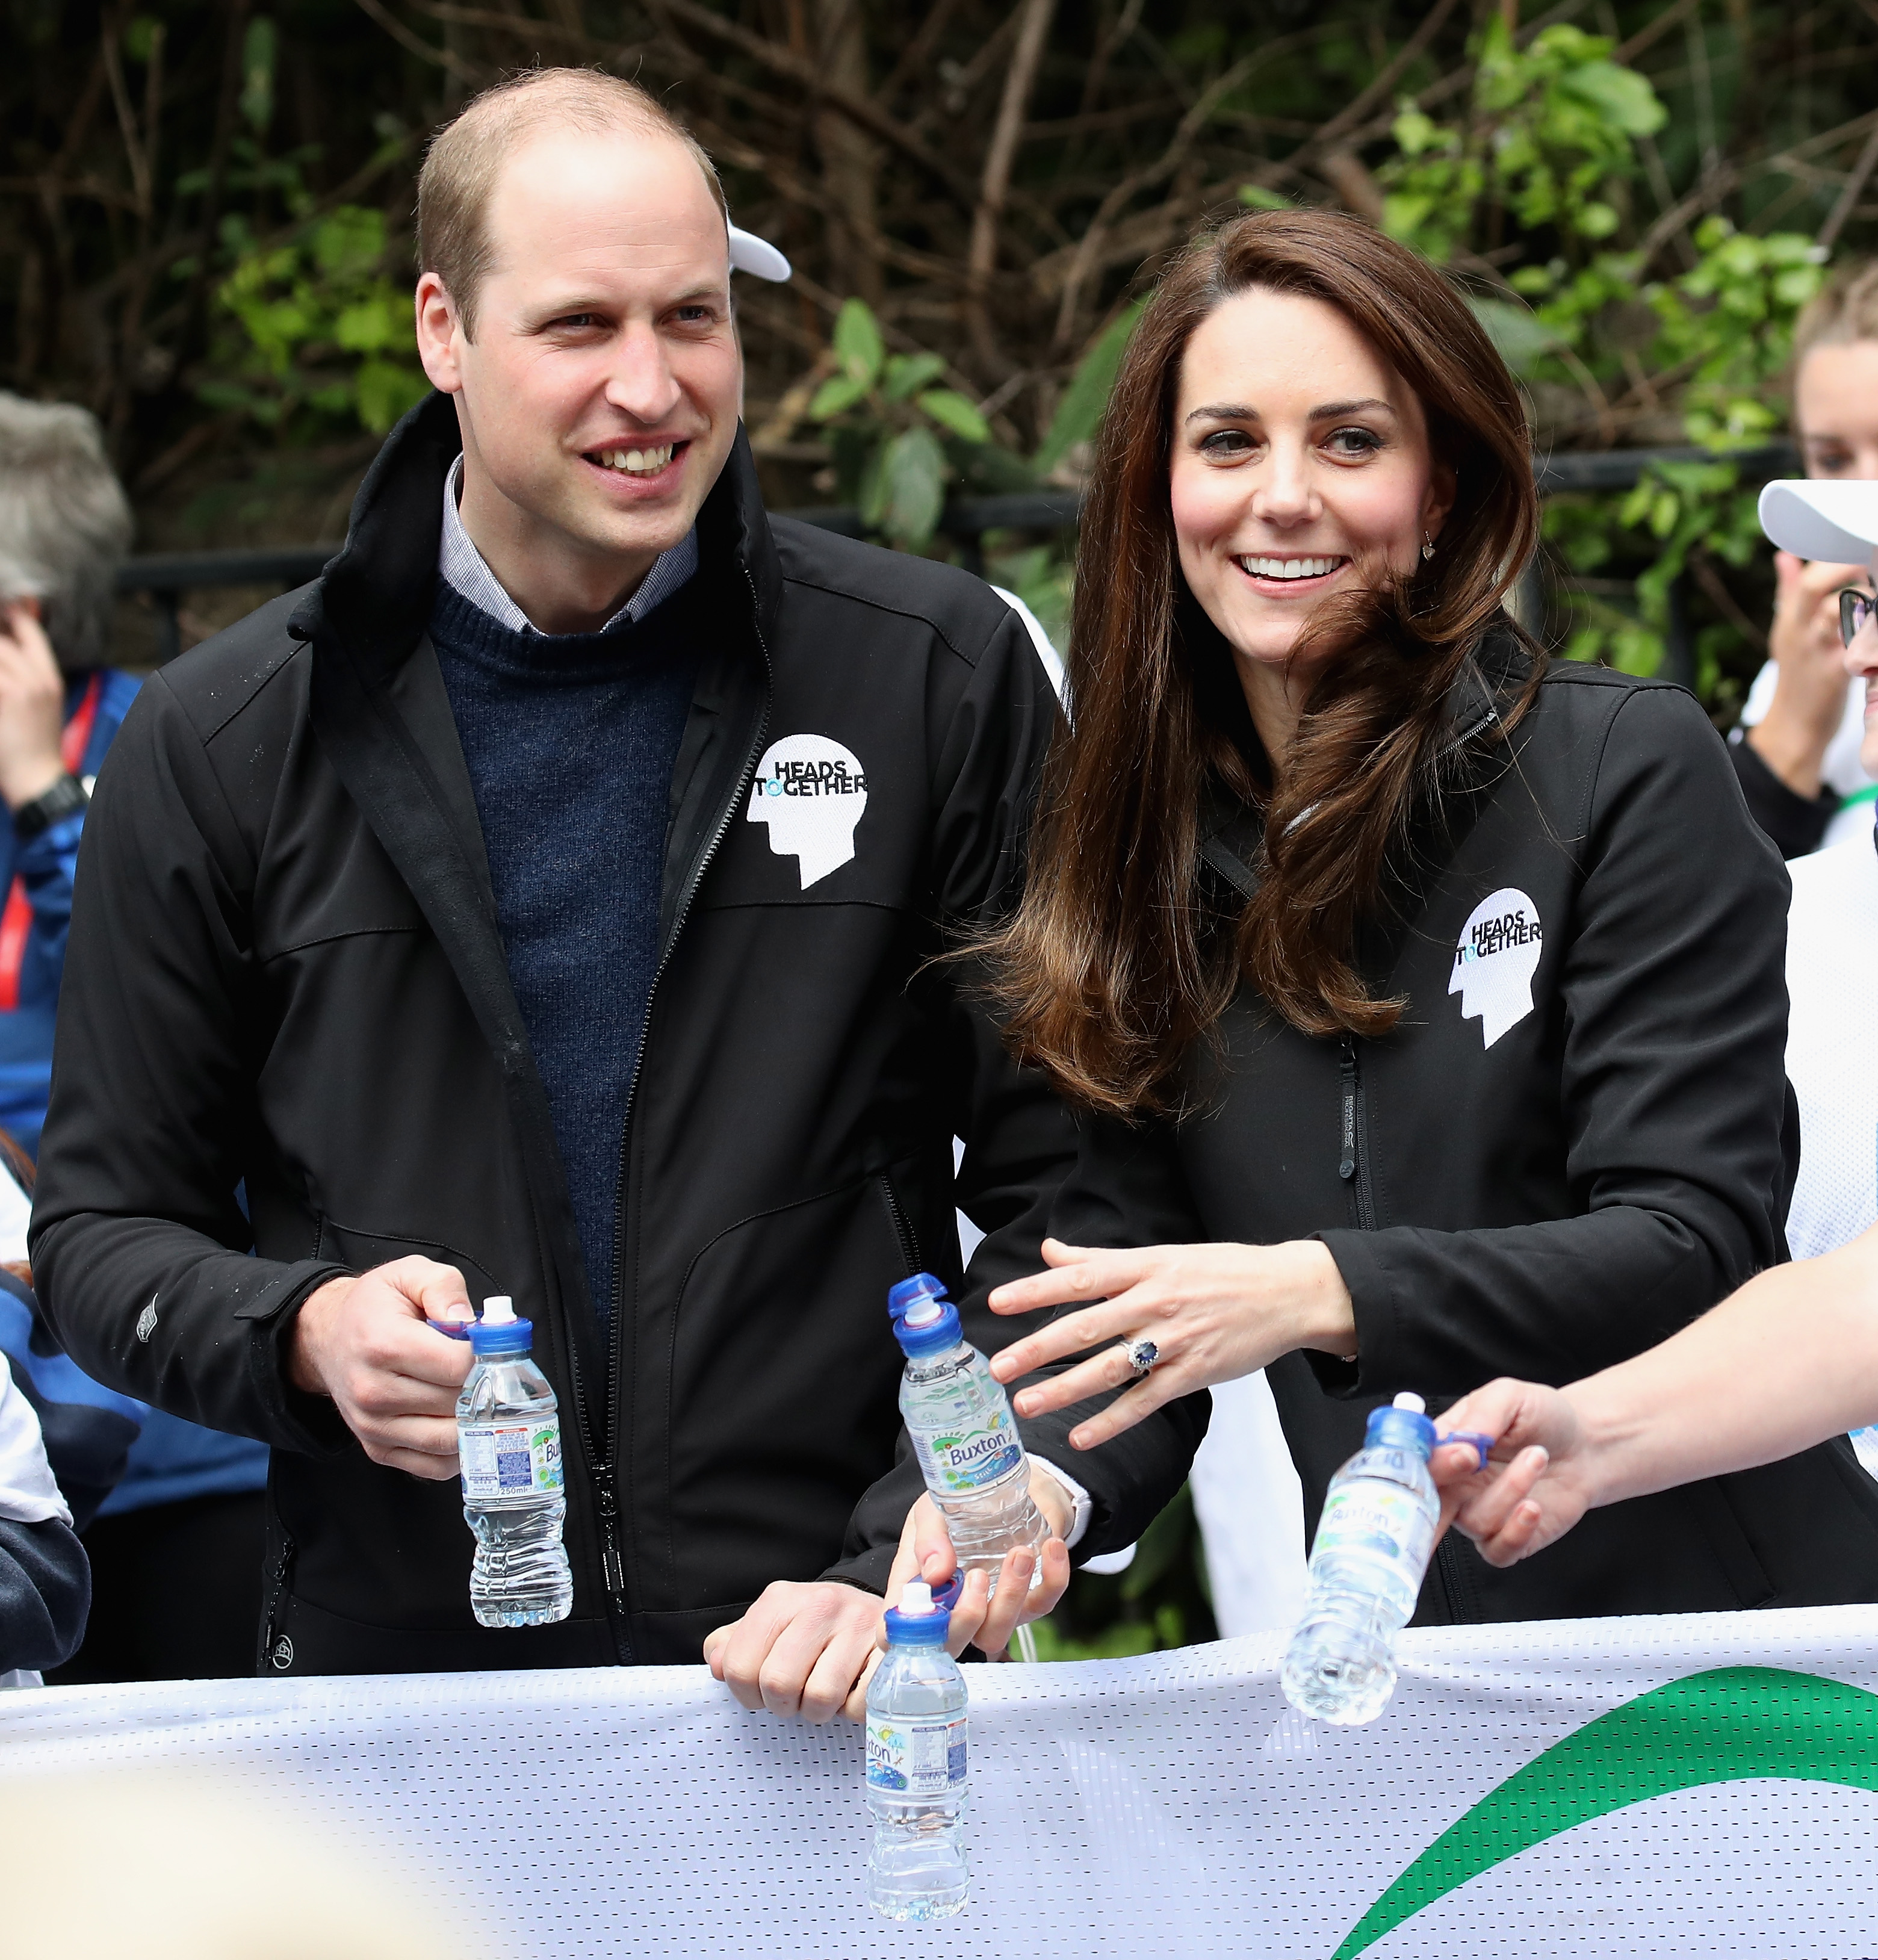 Състезател се пошегува с принц Уилям и съпругата му Кейт по време на Лондонския маратон. Докато Кейт, Уилям и Хари раздаваха вода на състезателите, един от тях отвори бутилката си и напръска с вода Кейт и Уилям.